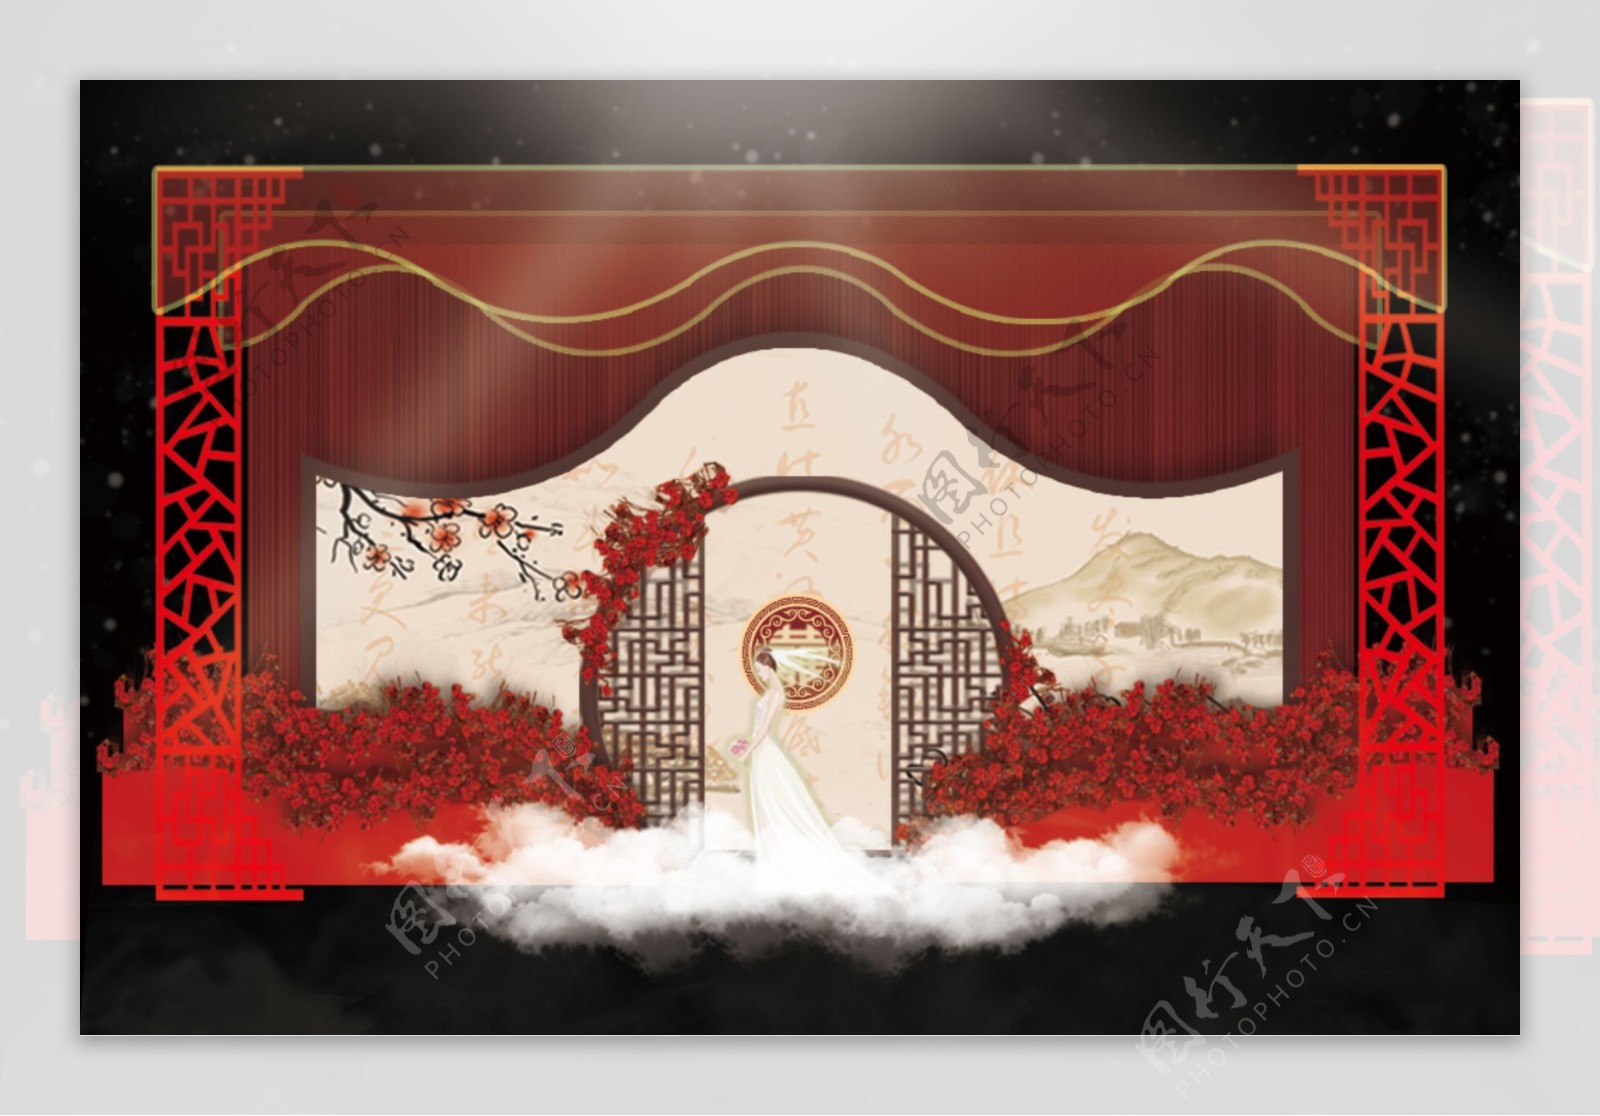 中式红色婚礼效果图